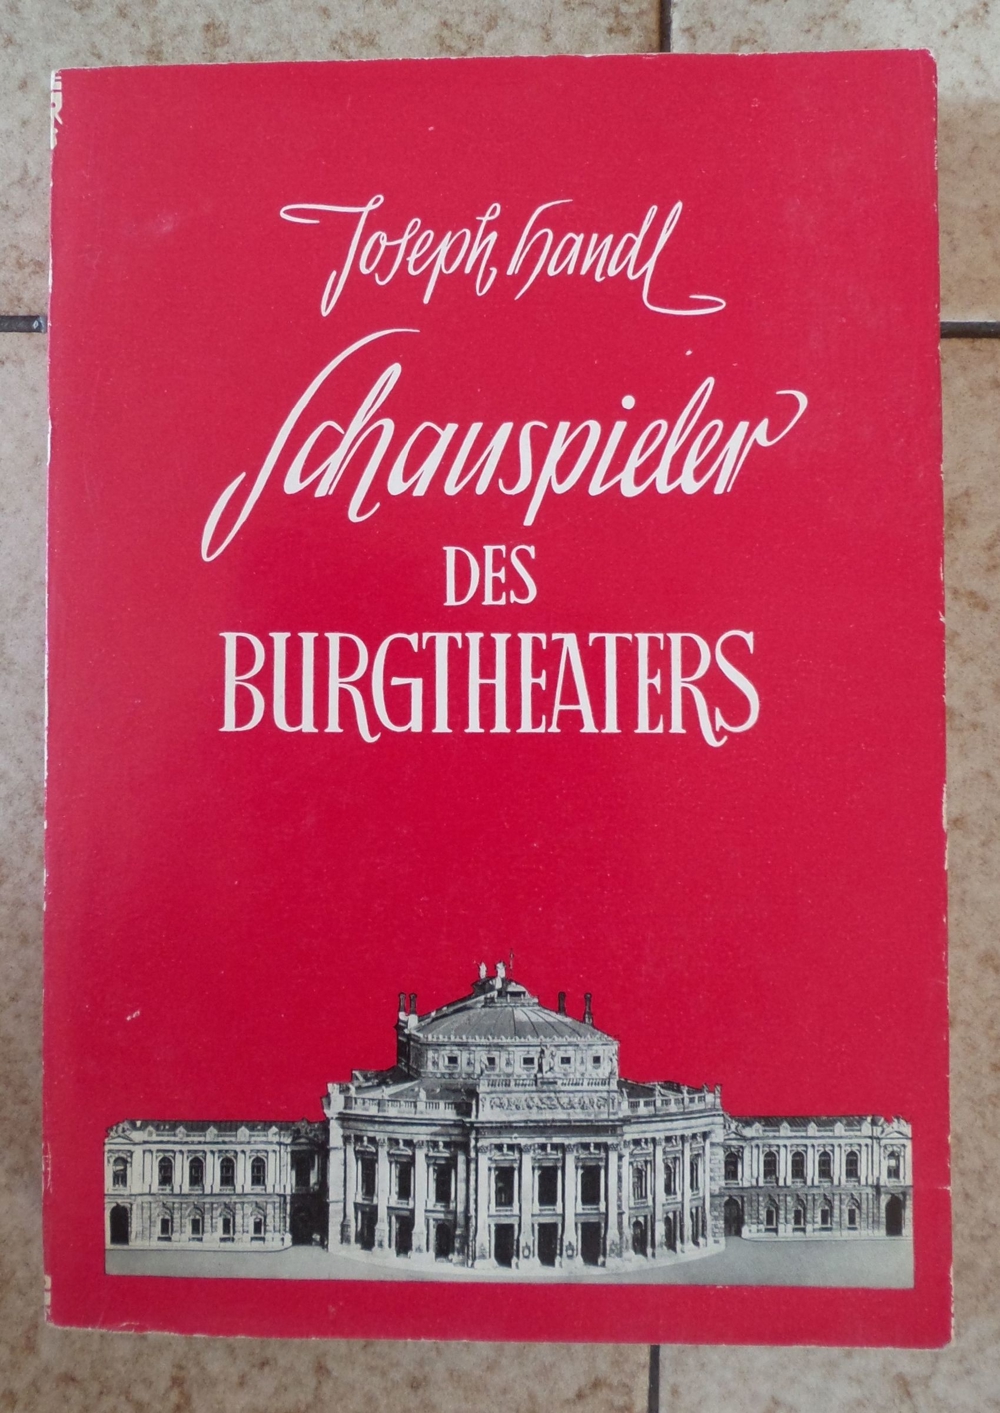 Schauspieler der Burgtheaters